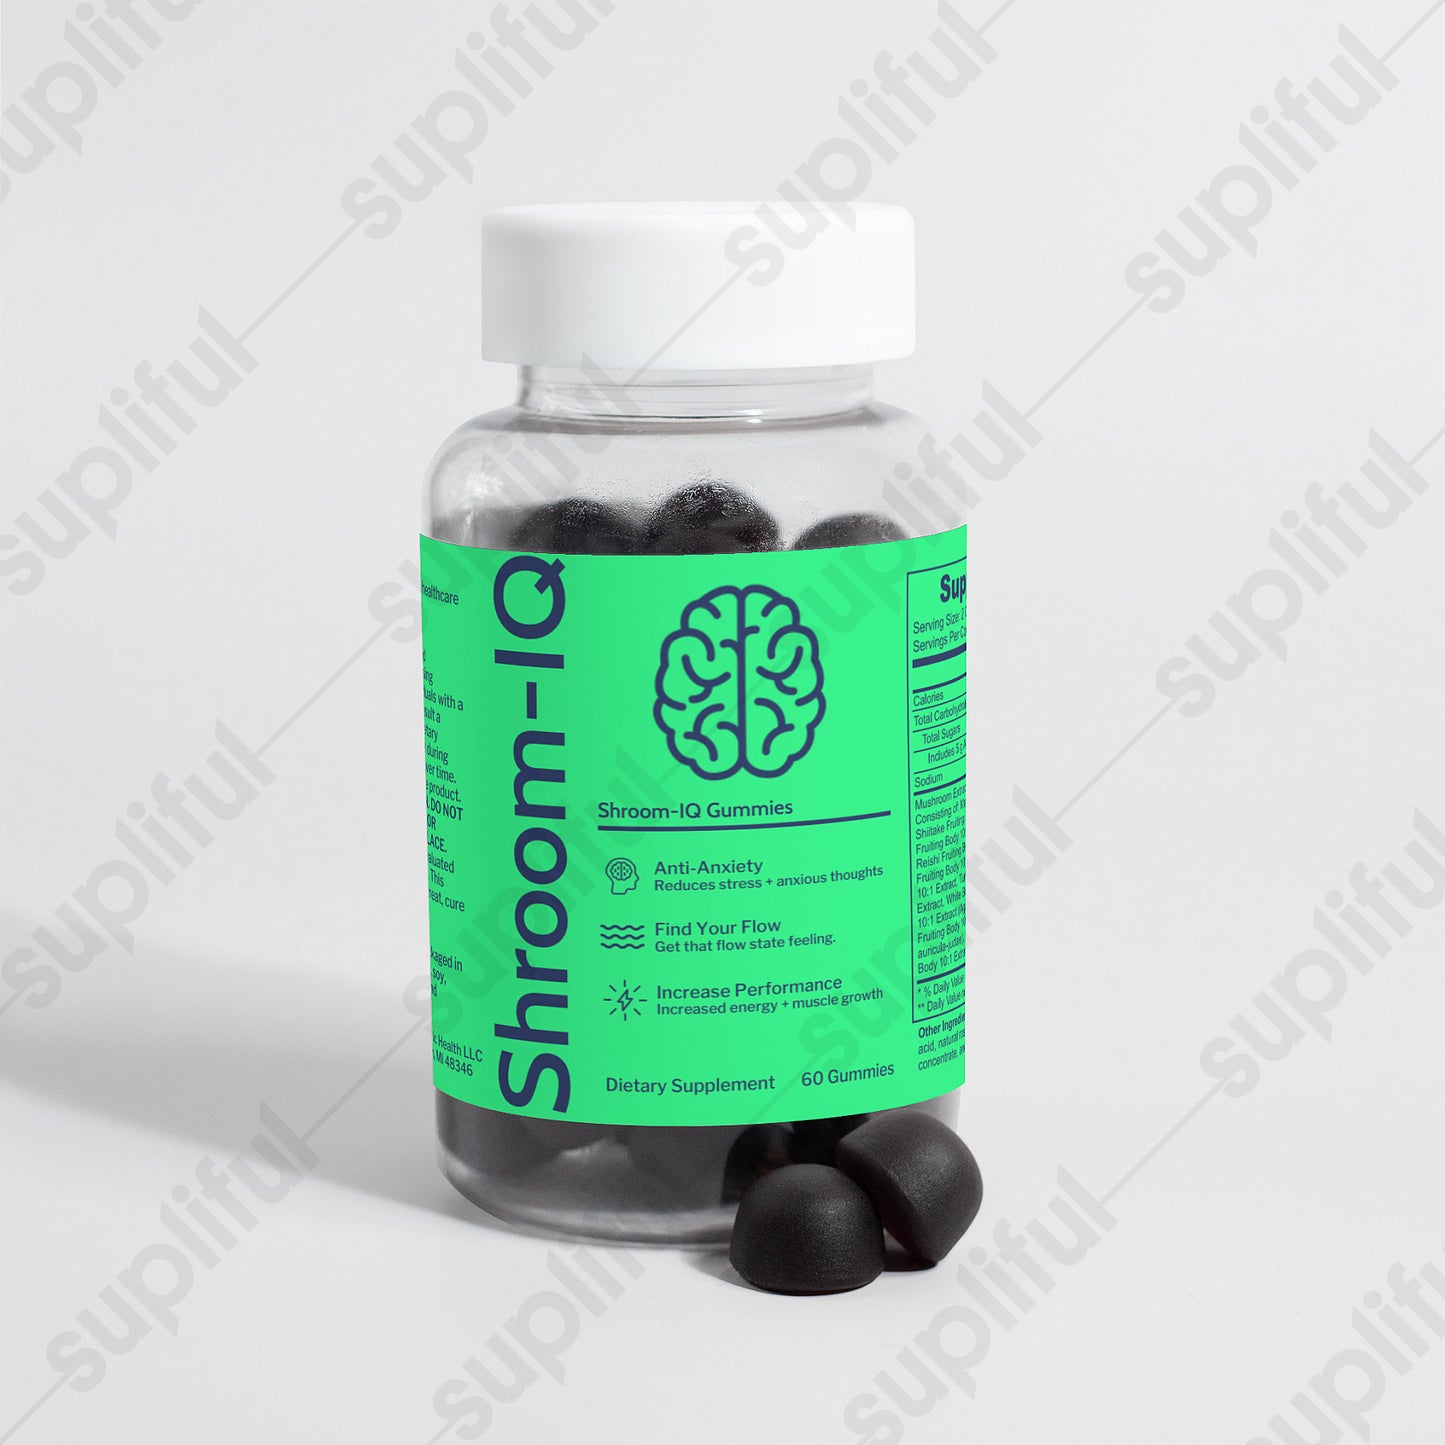 Shroom-IQ Gummies